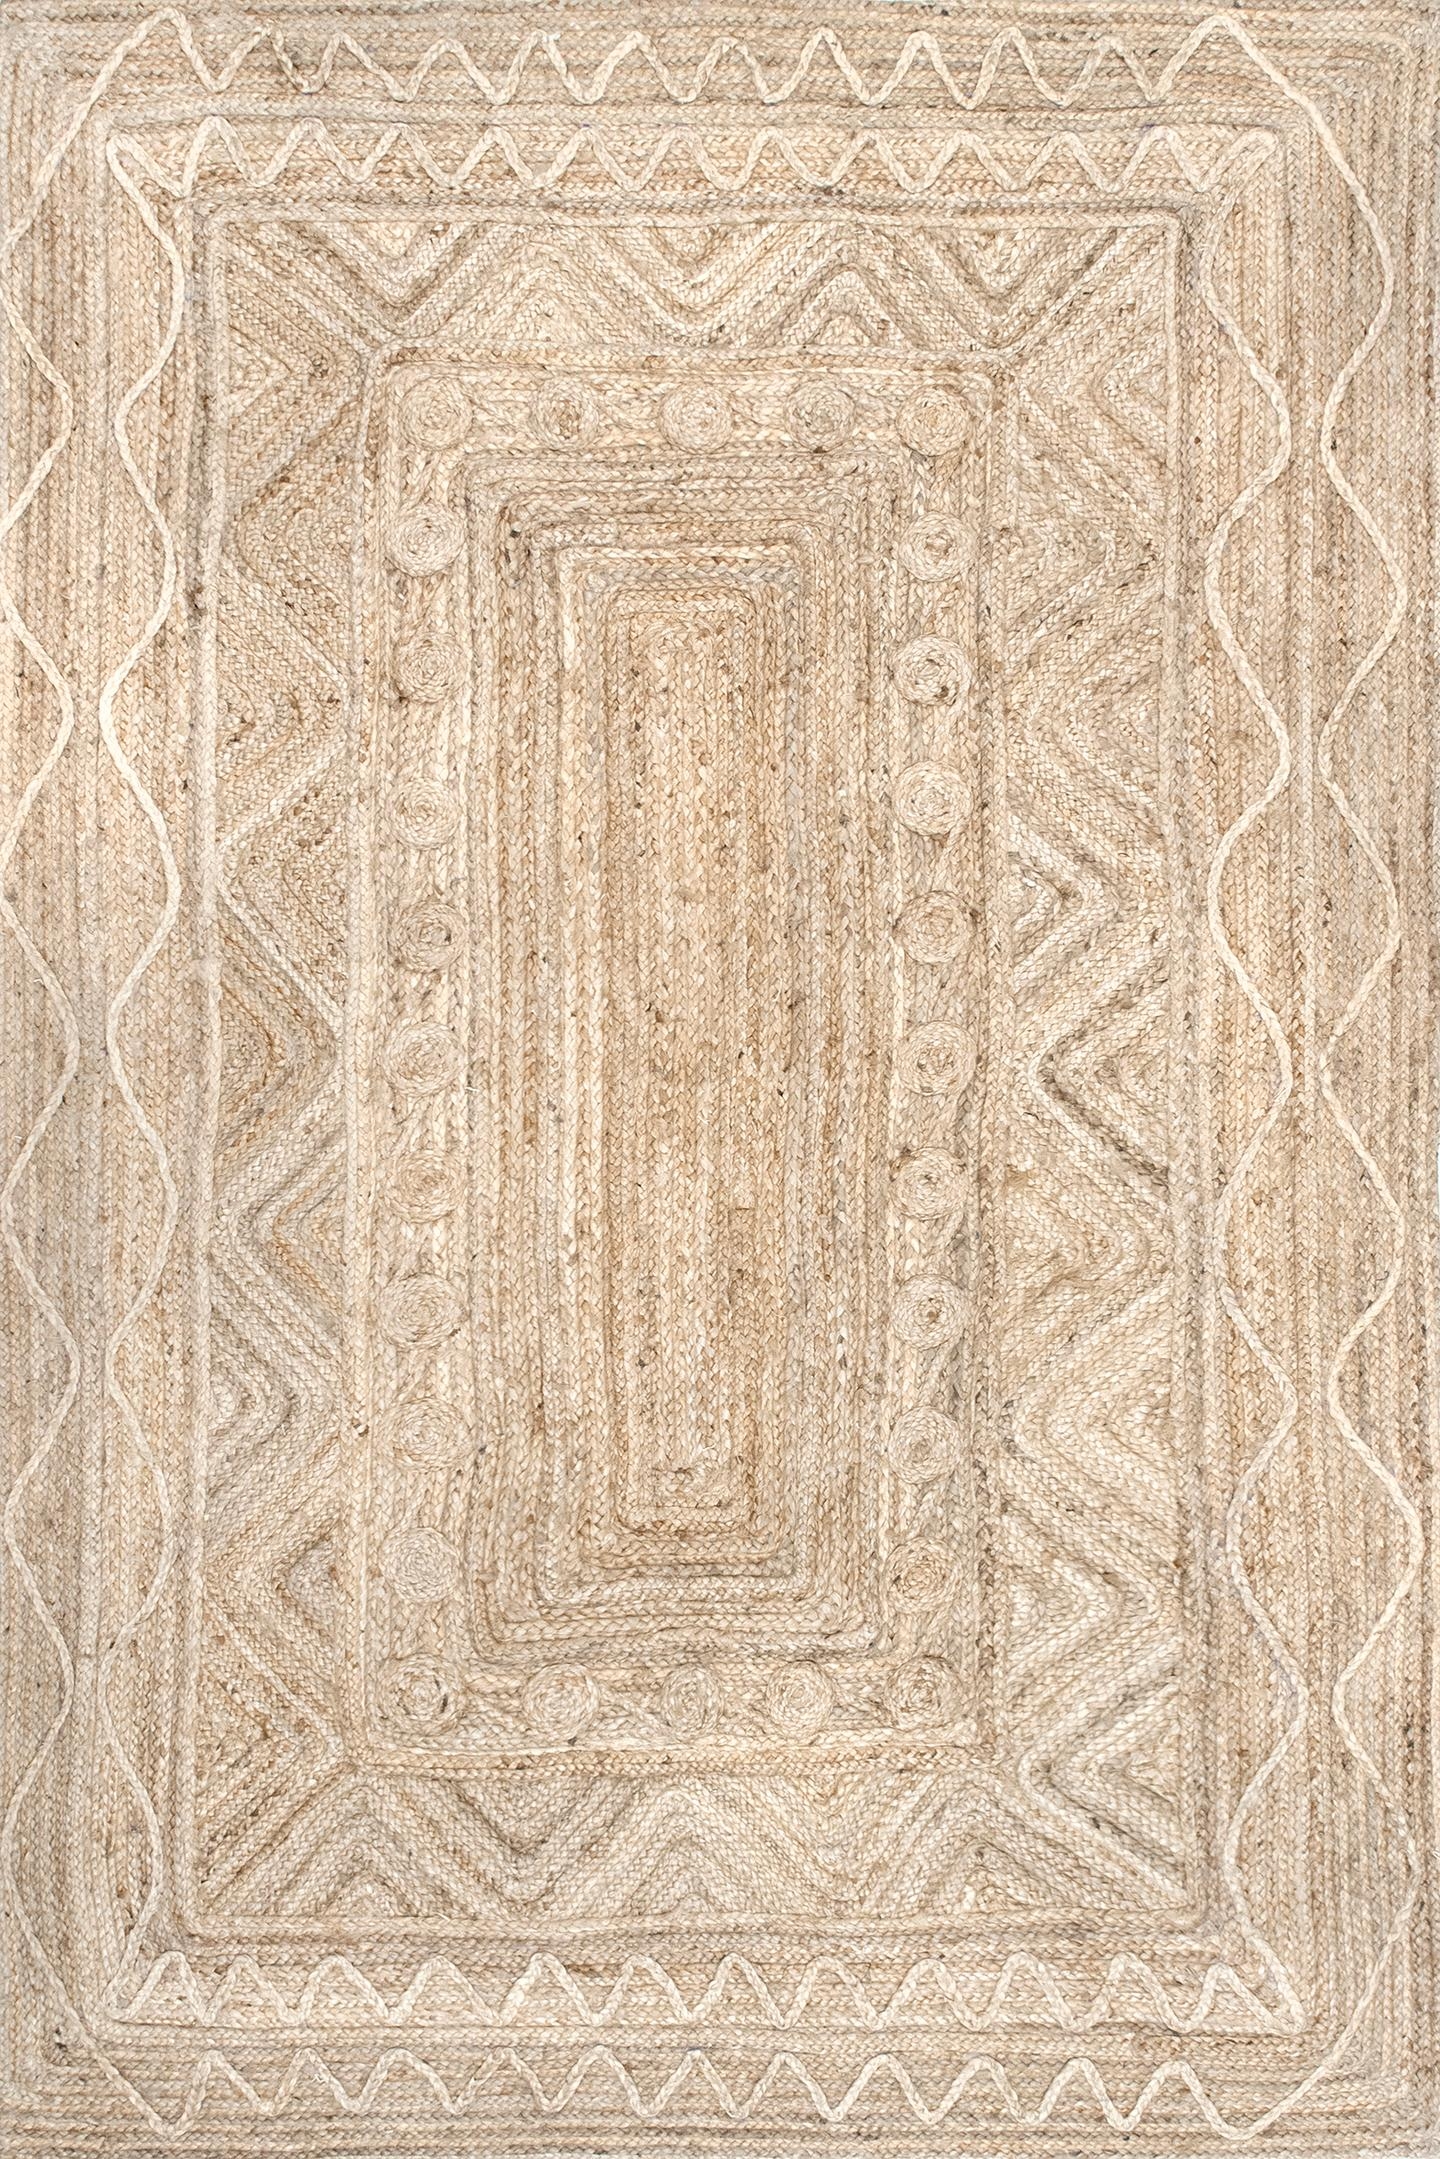  Amora Textured Jute Area Rug - Image 1